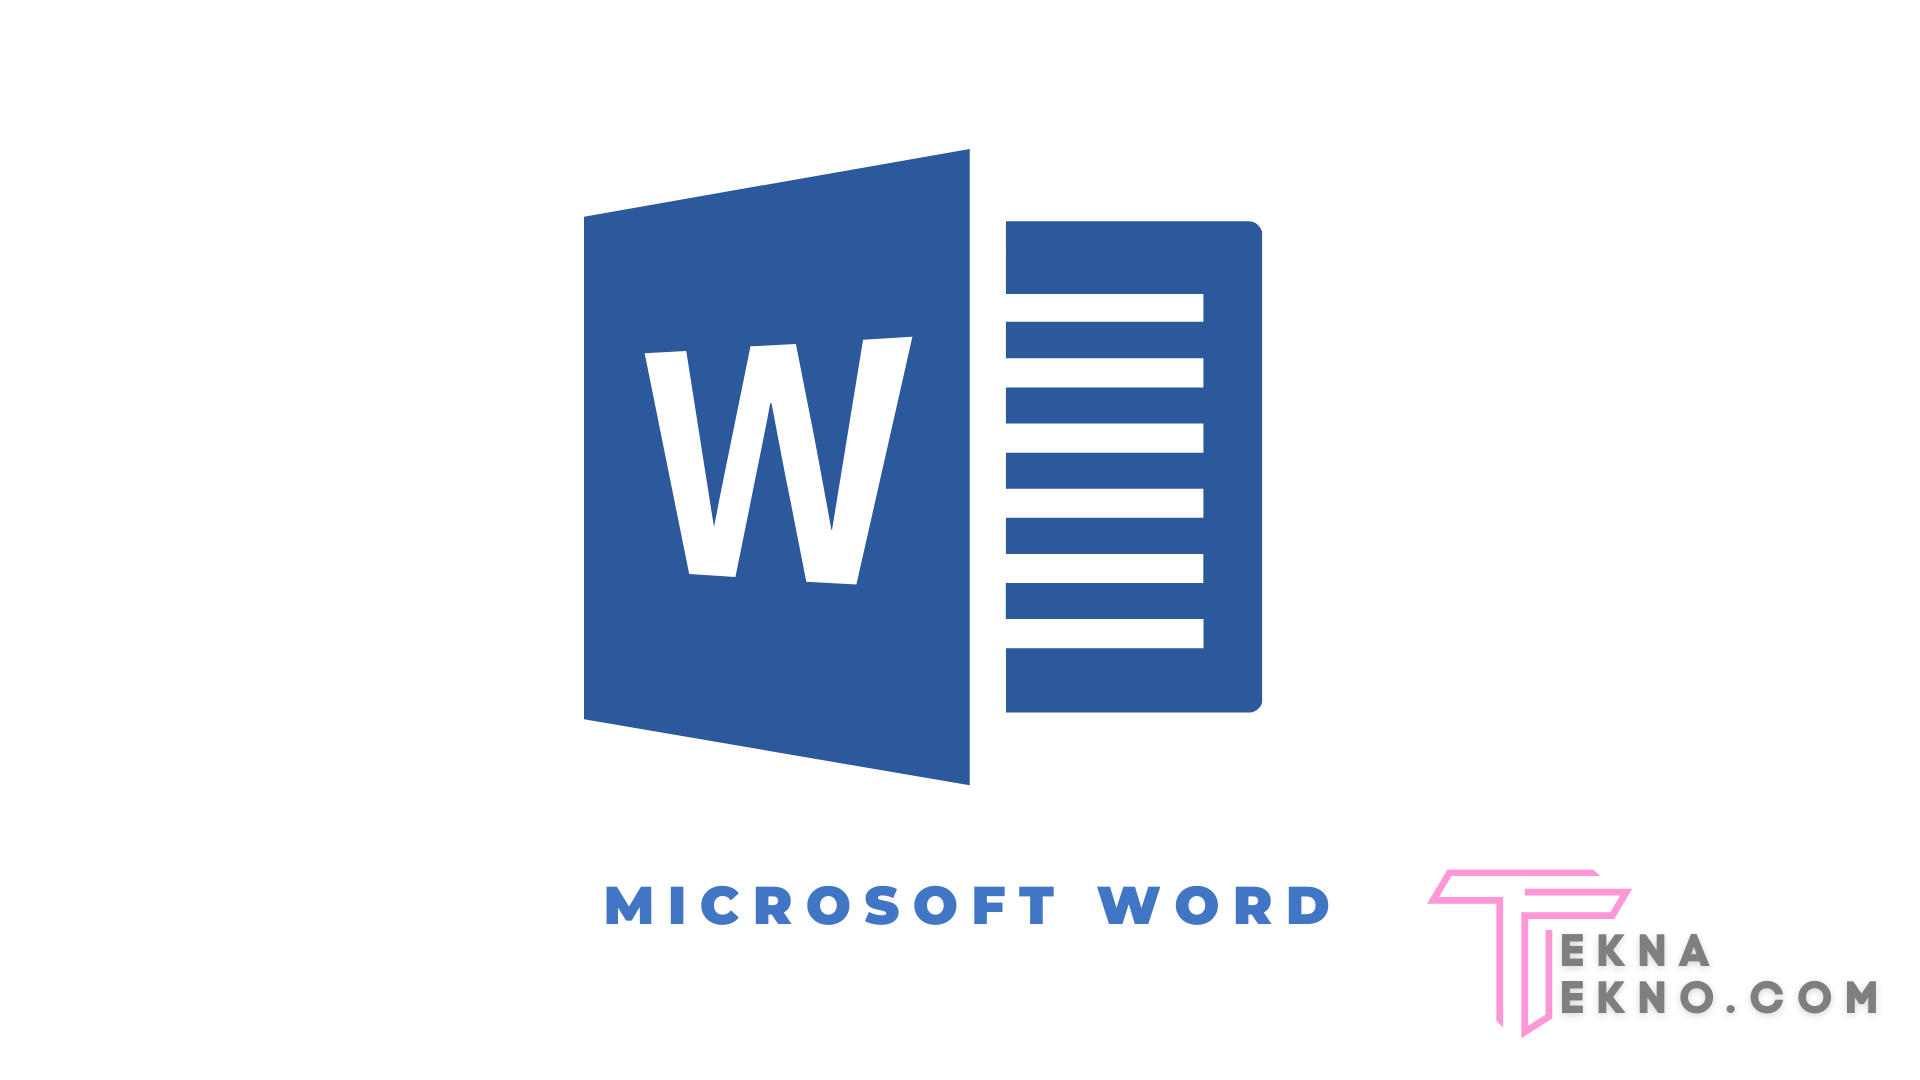 Microsoft Word Pengertian Fungsi Kegunaan Dan Manfaat 5533